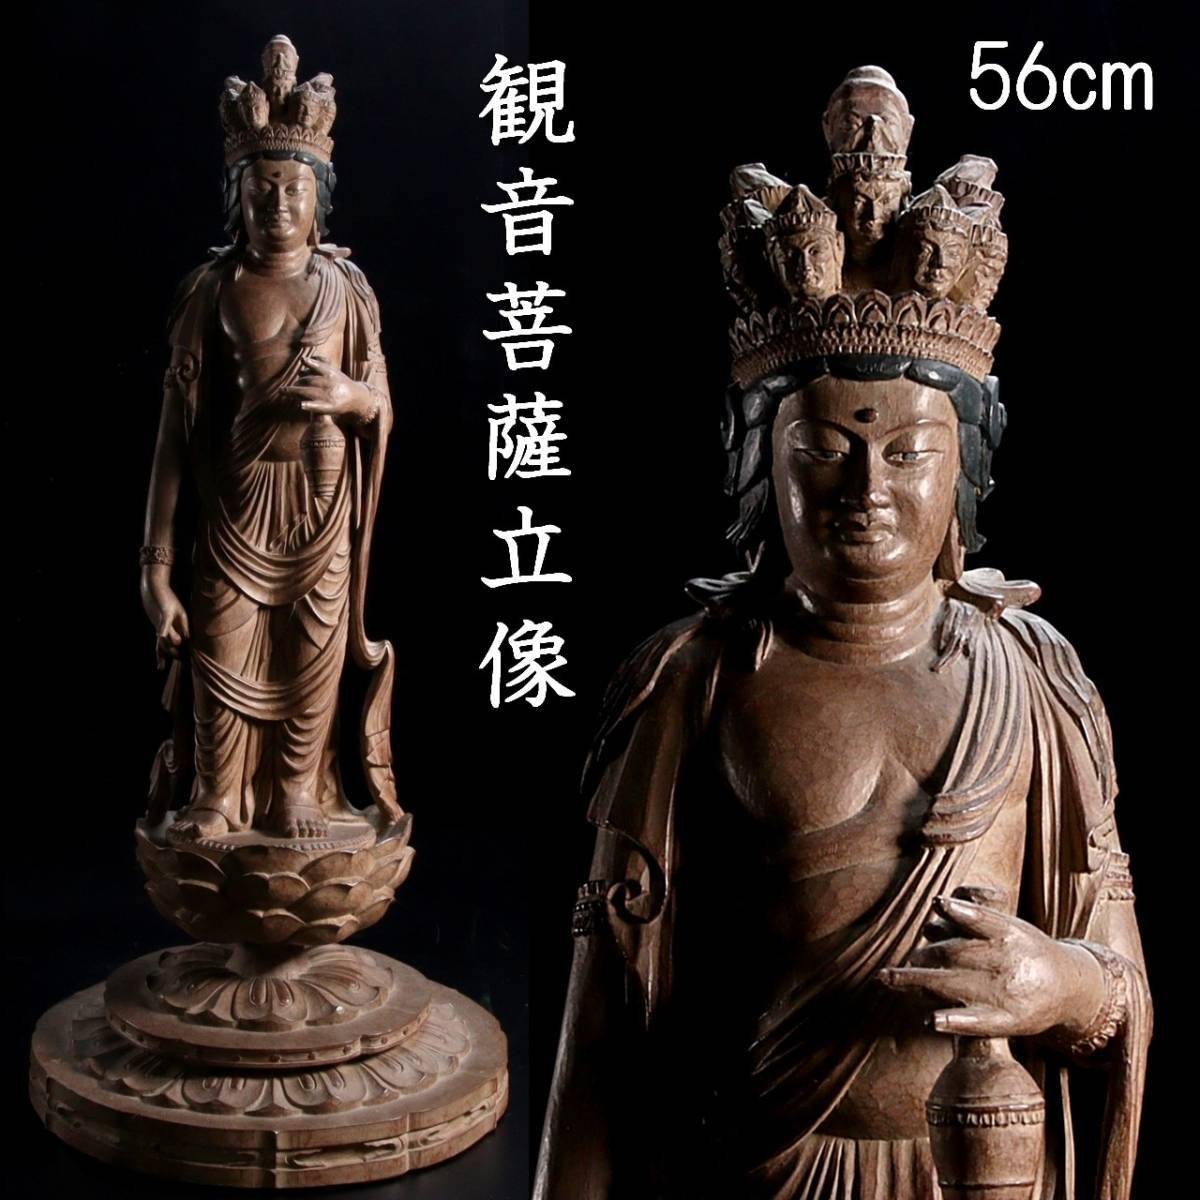 。◆錵◆ 仏教美術 観音菩薩立像 56cm 仏像唐物骨董 [E872]OS/23.廻/TM/(170)_画像1